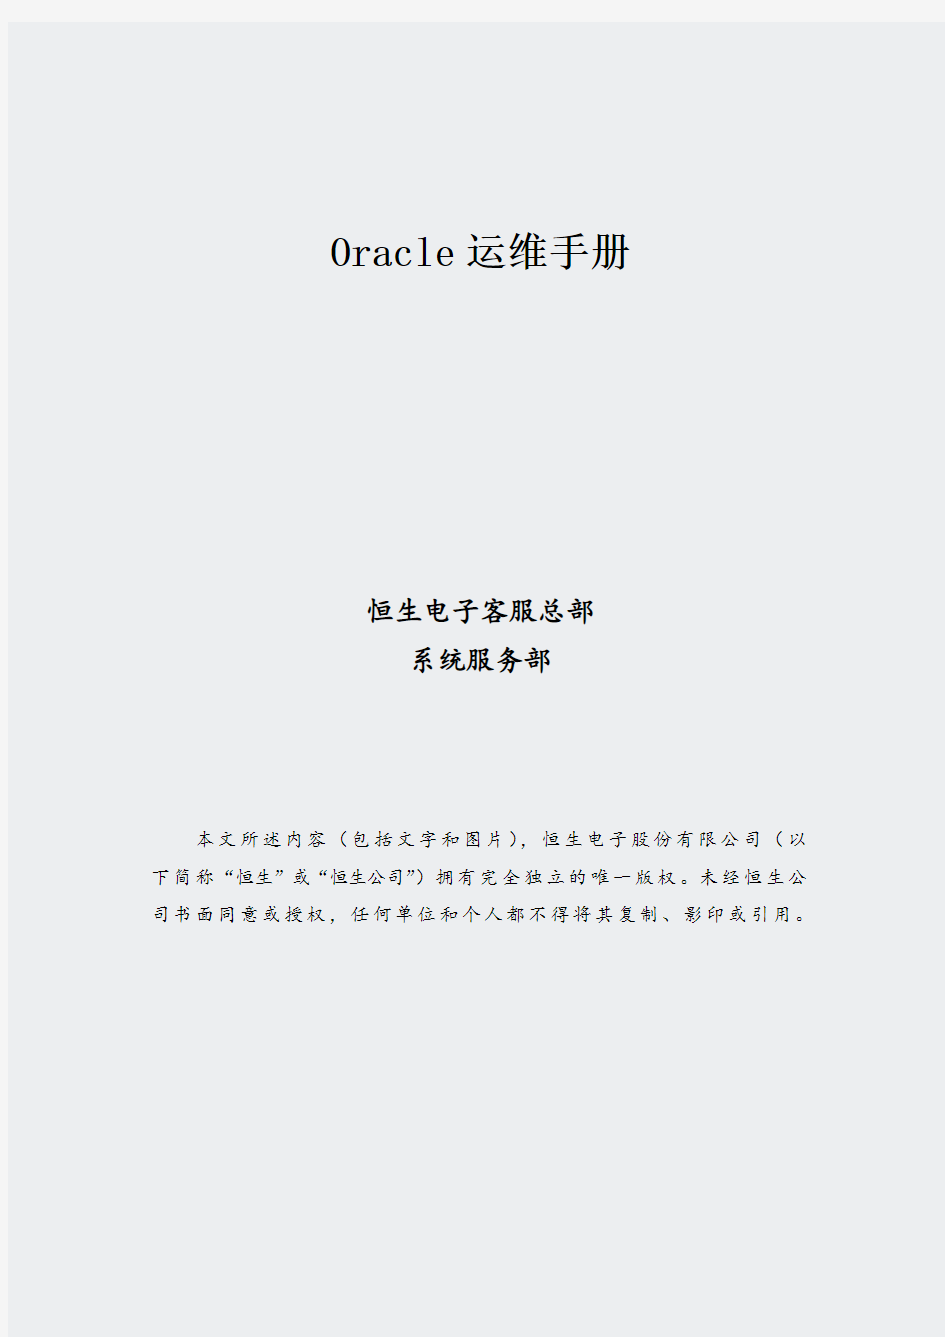 运维手册_数据库_Oracle11gRAC日常运维手册(352)